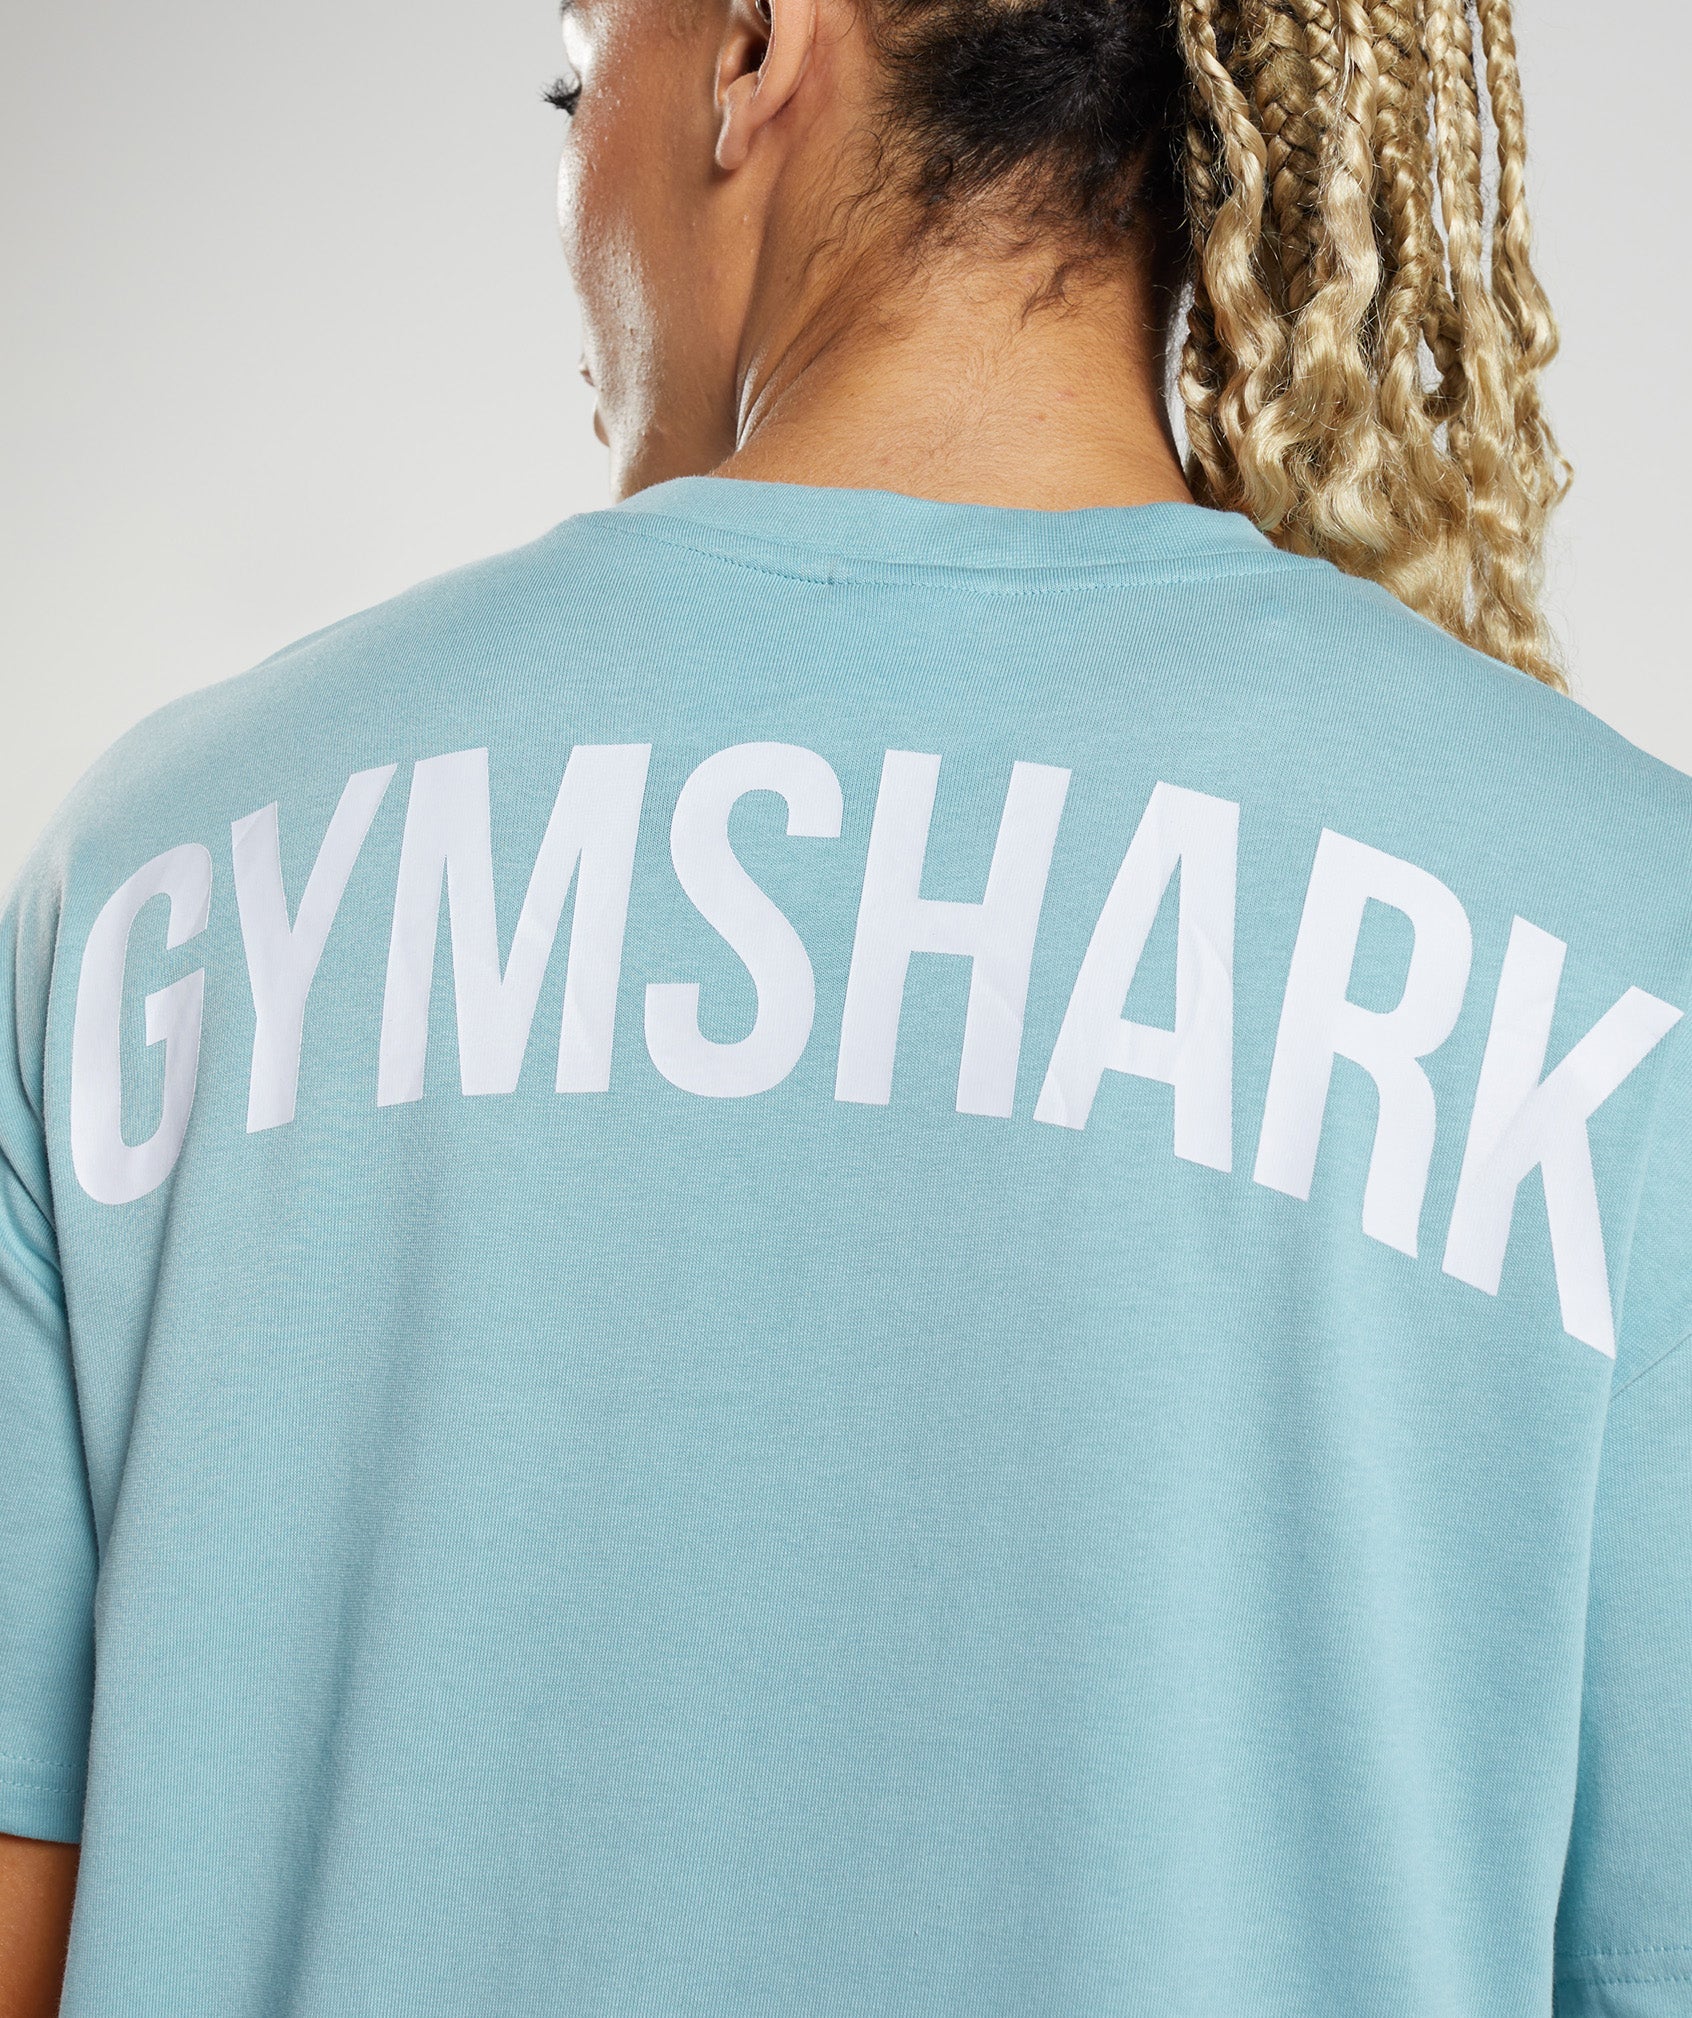 Gymshark GS Power Oversized T-Shirt - Black  Oversized tshirt, Gymshark, T  shirts for women